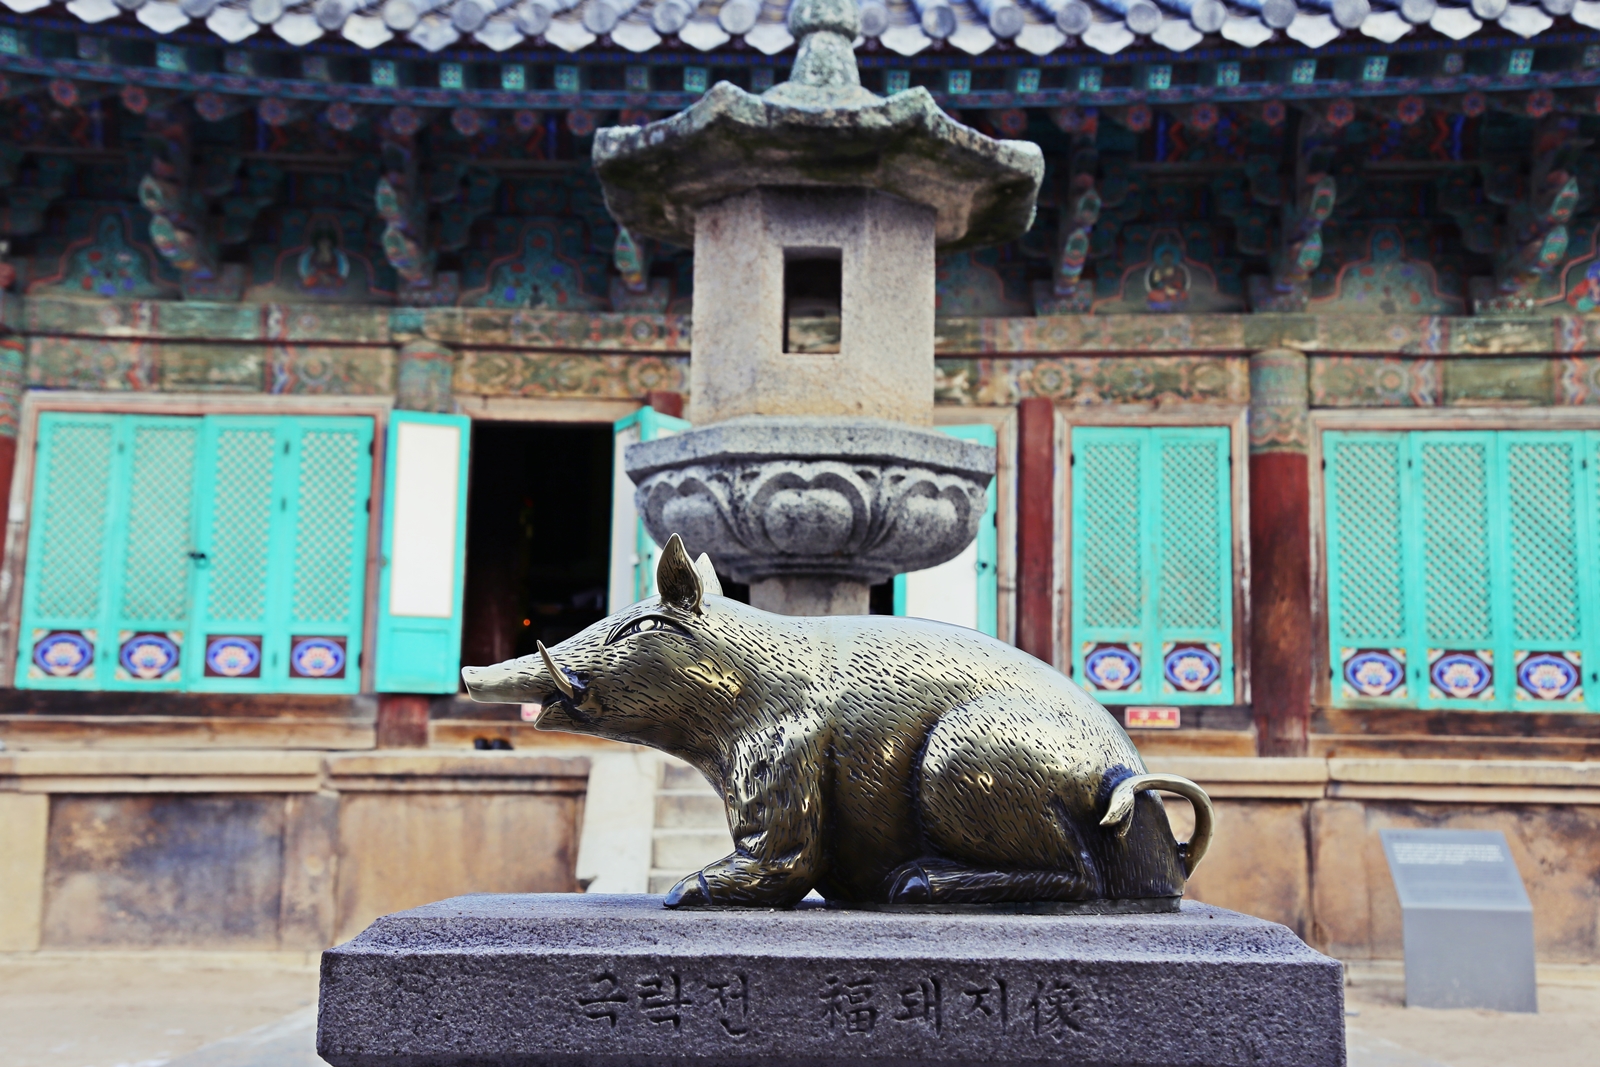 慶州のランドマークep3. 仏国寺と石窟庵 | Golden City Gyeongju